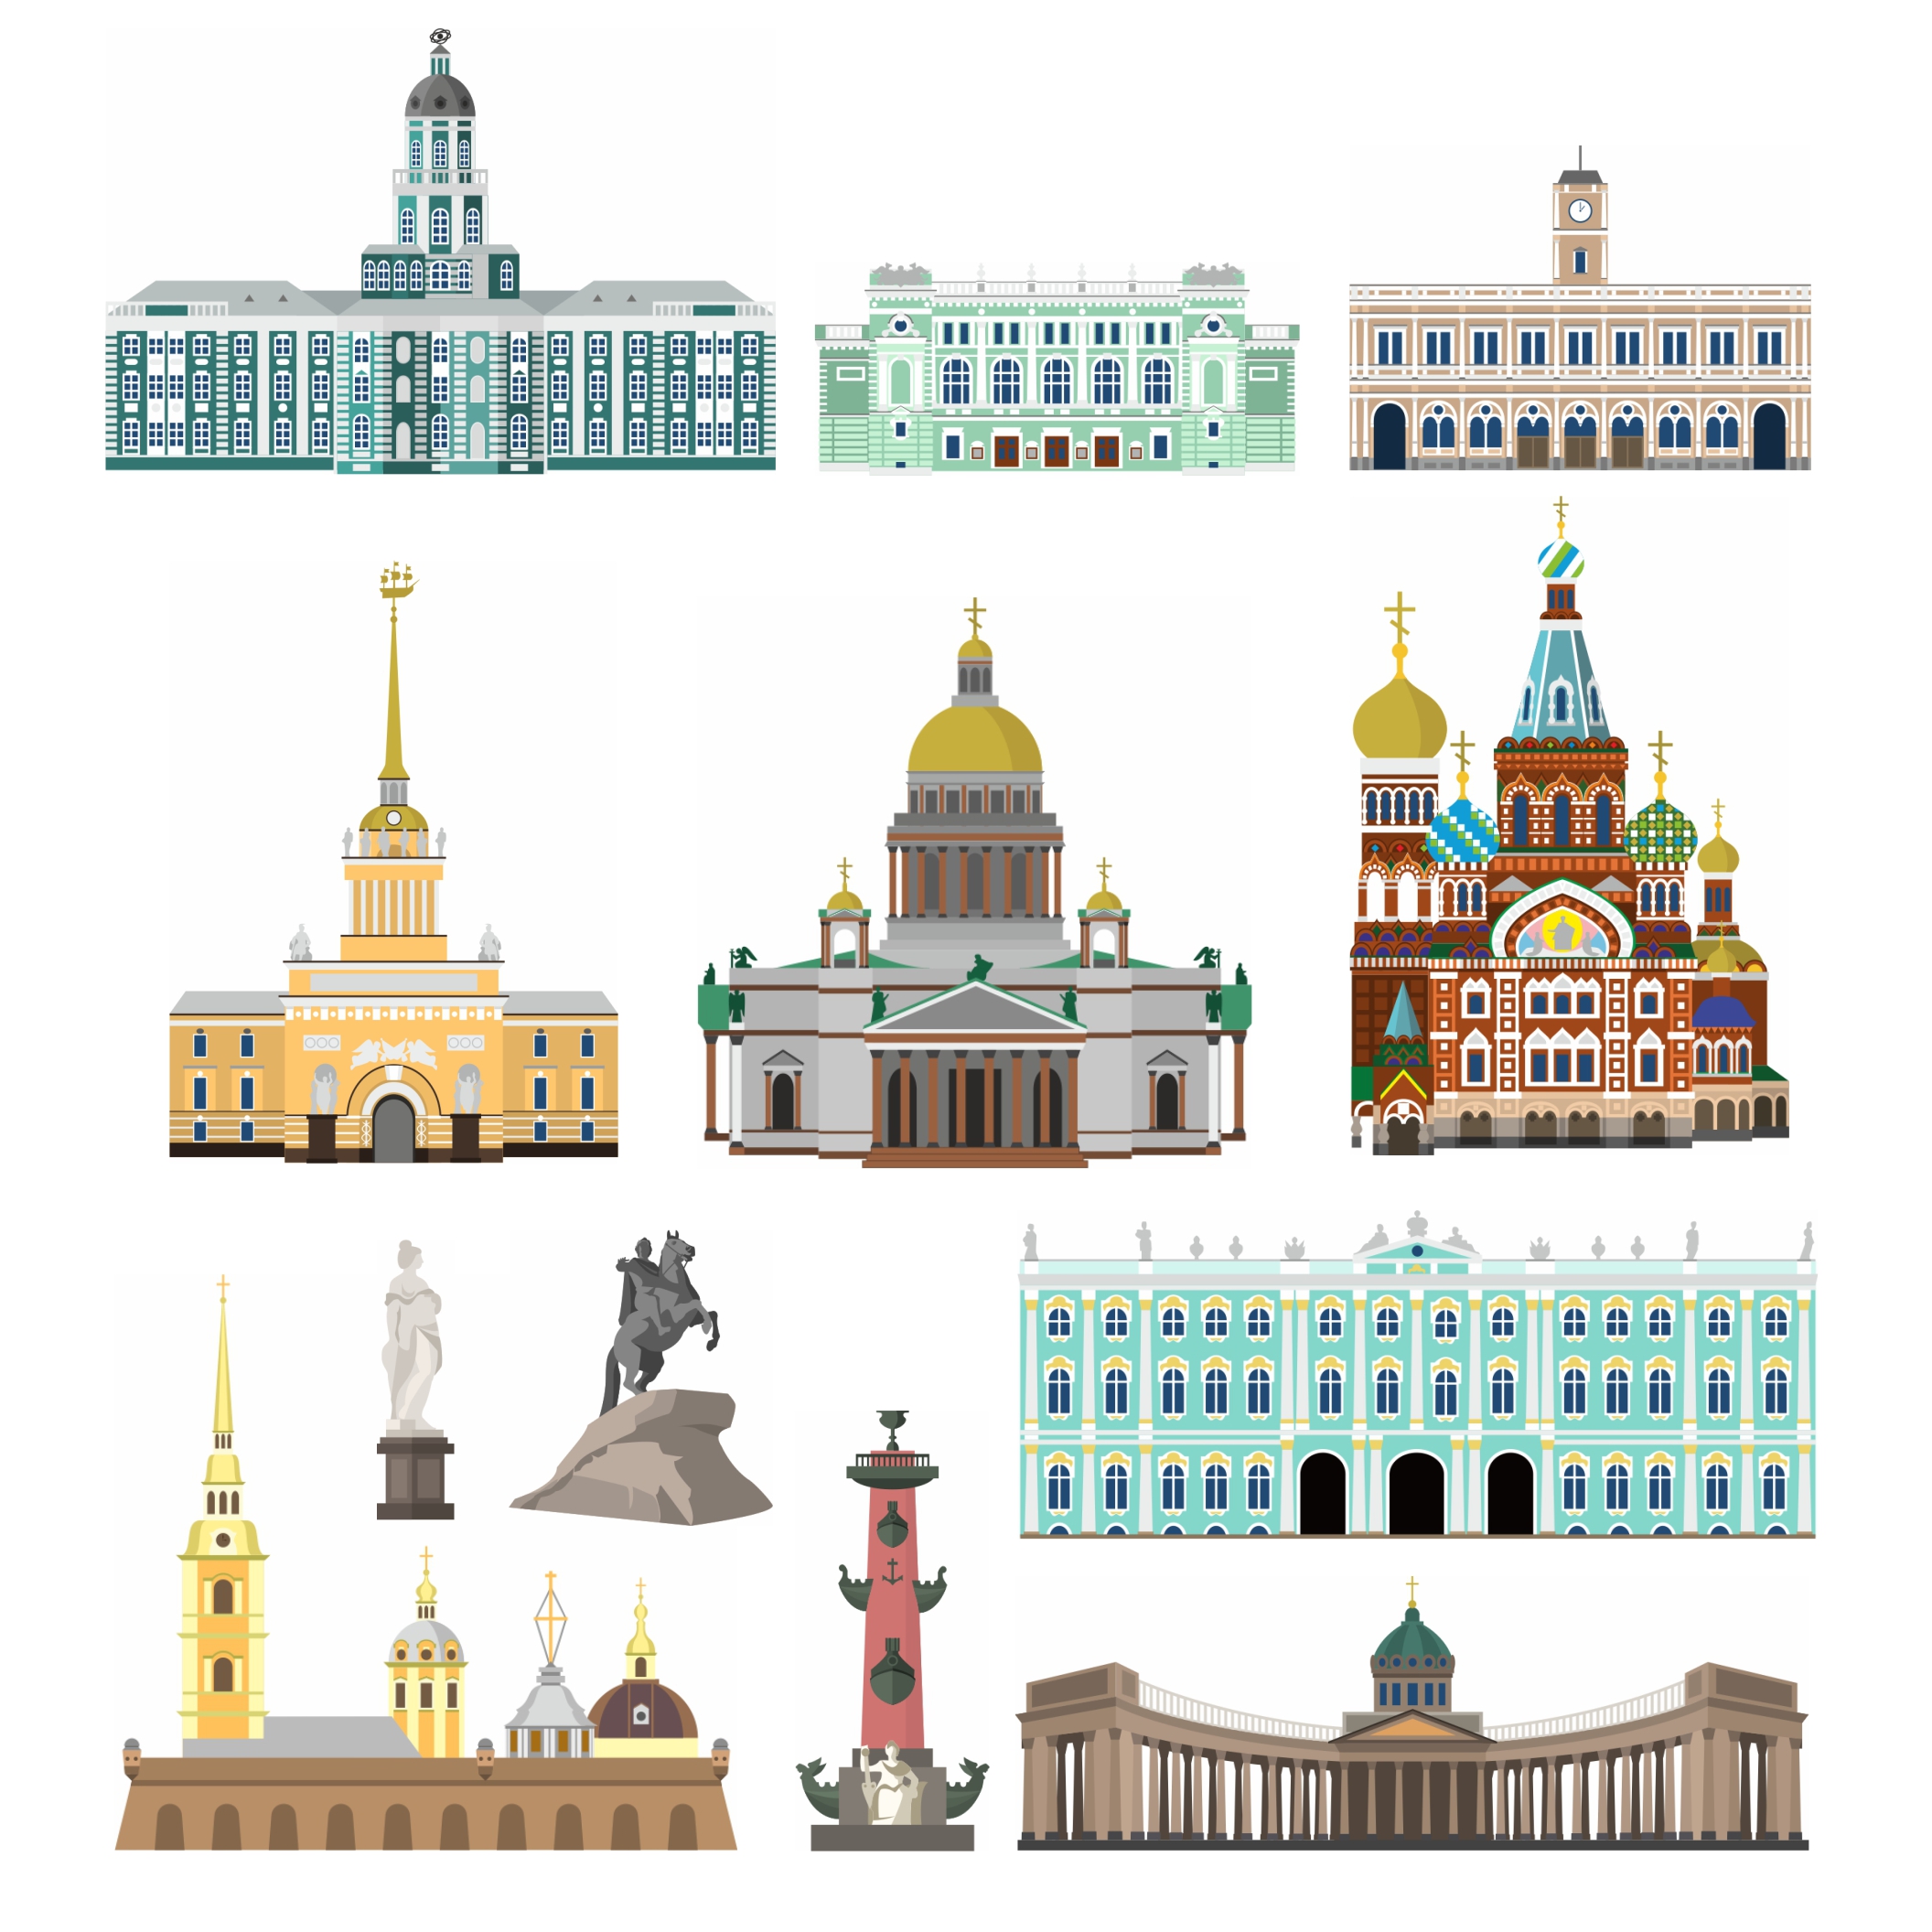 картинки санкт петербурга для детей нарисованные